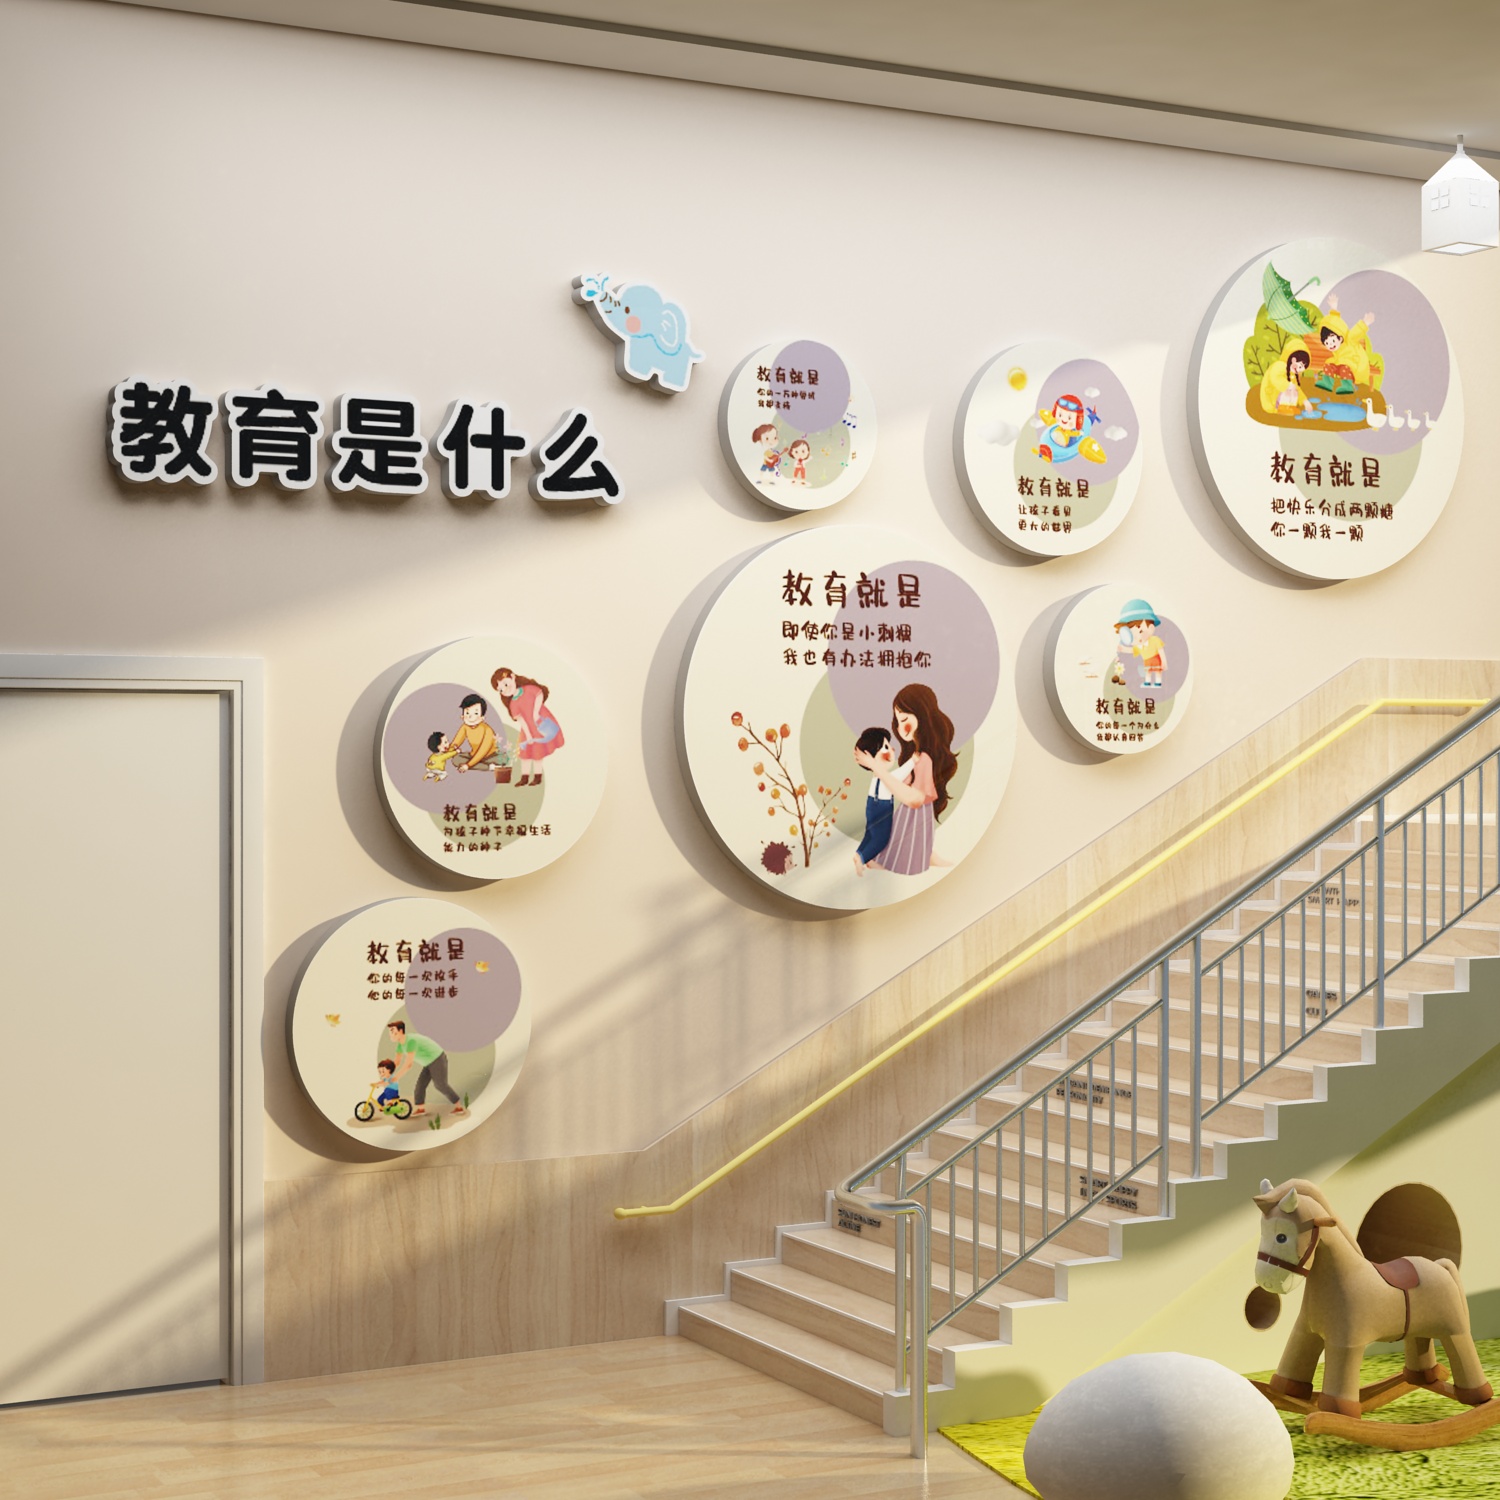 幼儿园楼梯走廊形象装饰办园理念教育